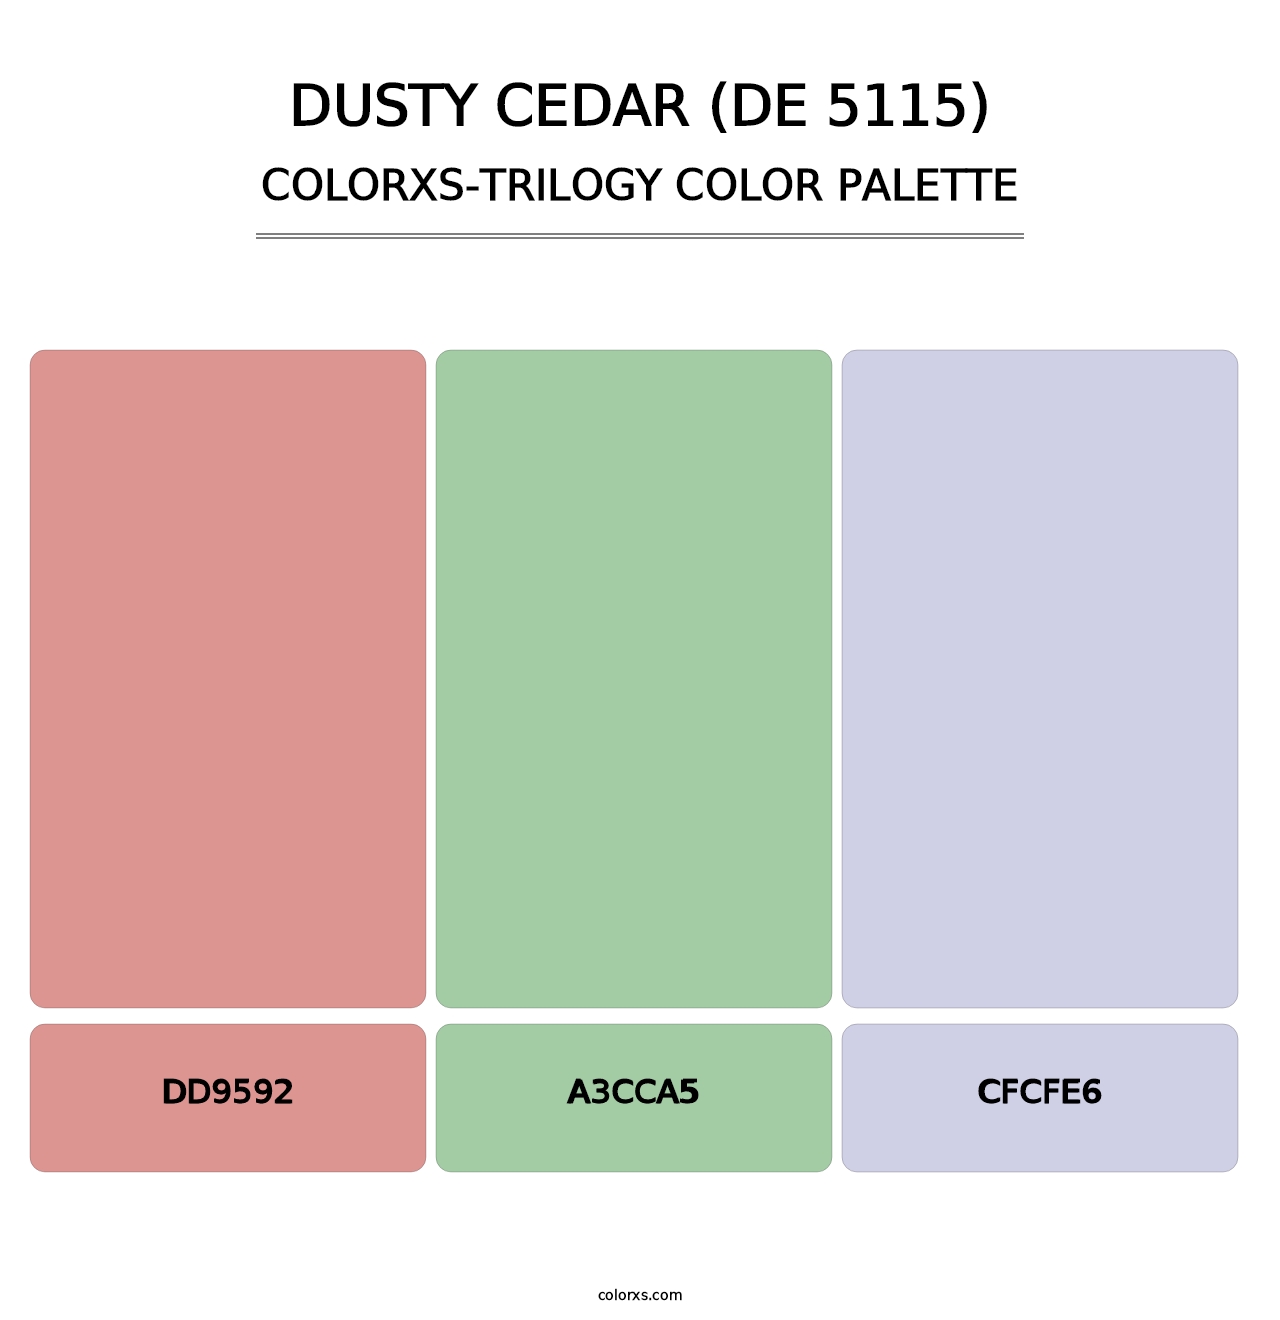 Dusty Cedar (DE 5115) - Colorxs Trilogy Palette